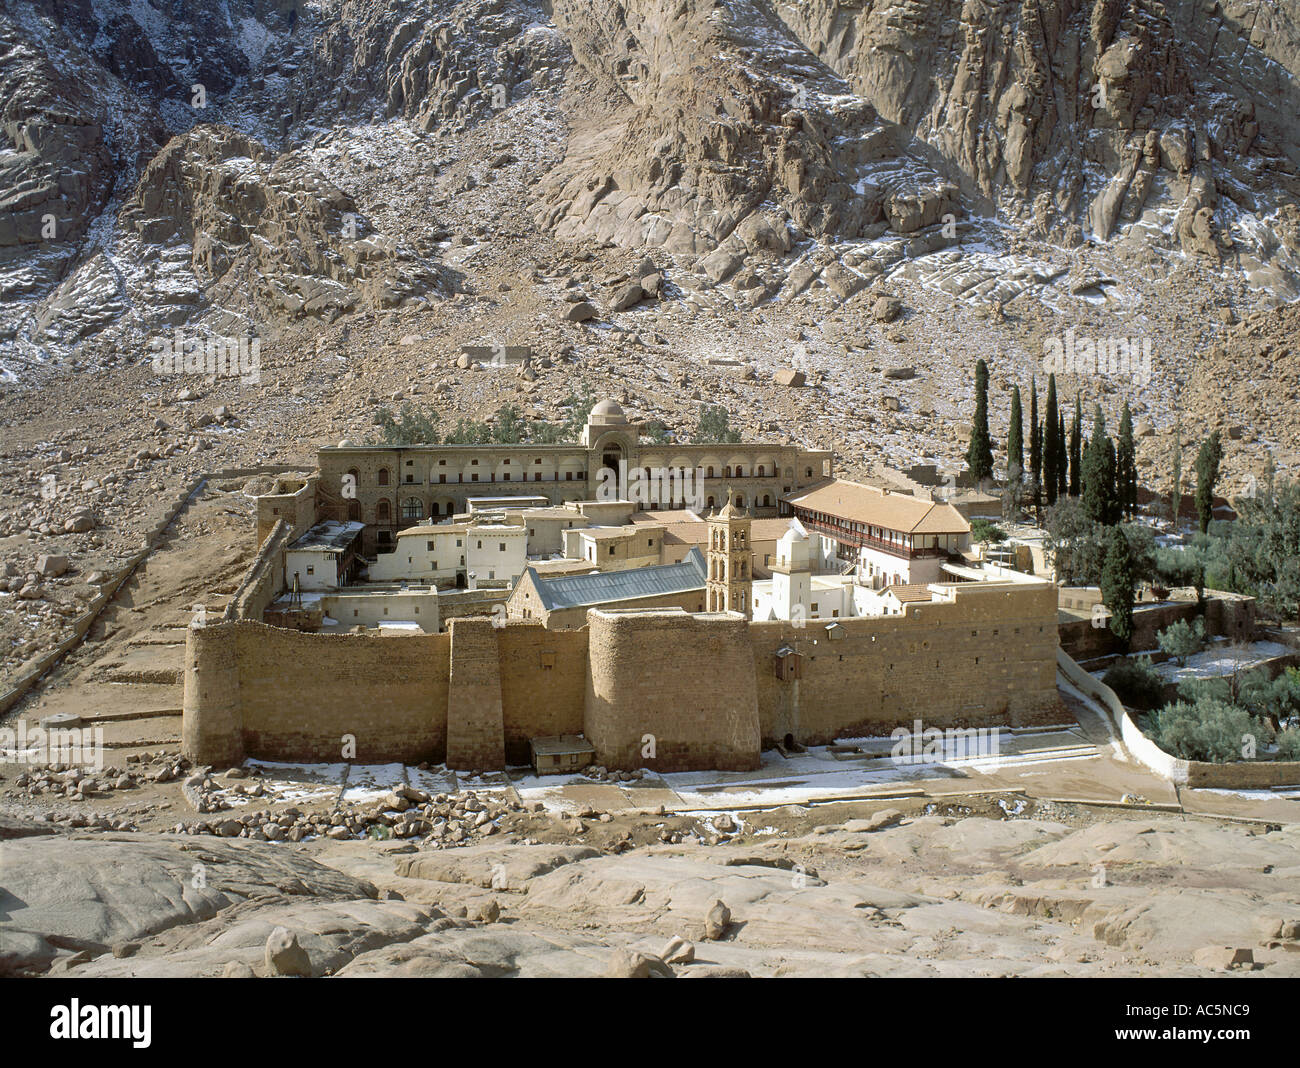 St. Catherines Kloster am Fuße des Mount Sinai Sinai Ägypten Stockfoto